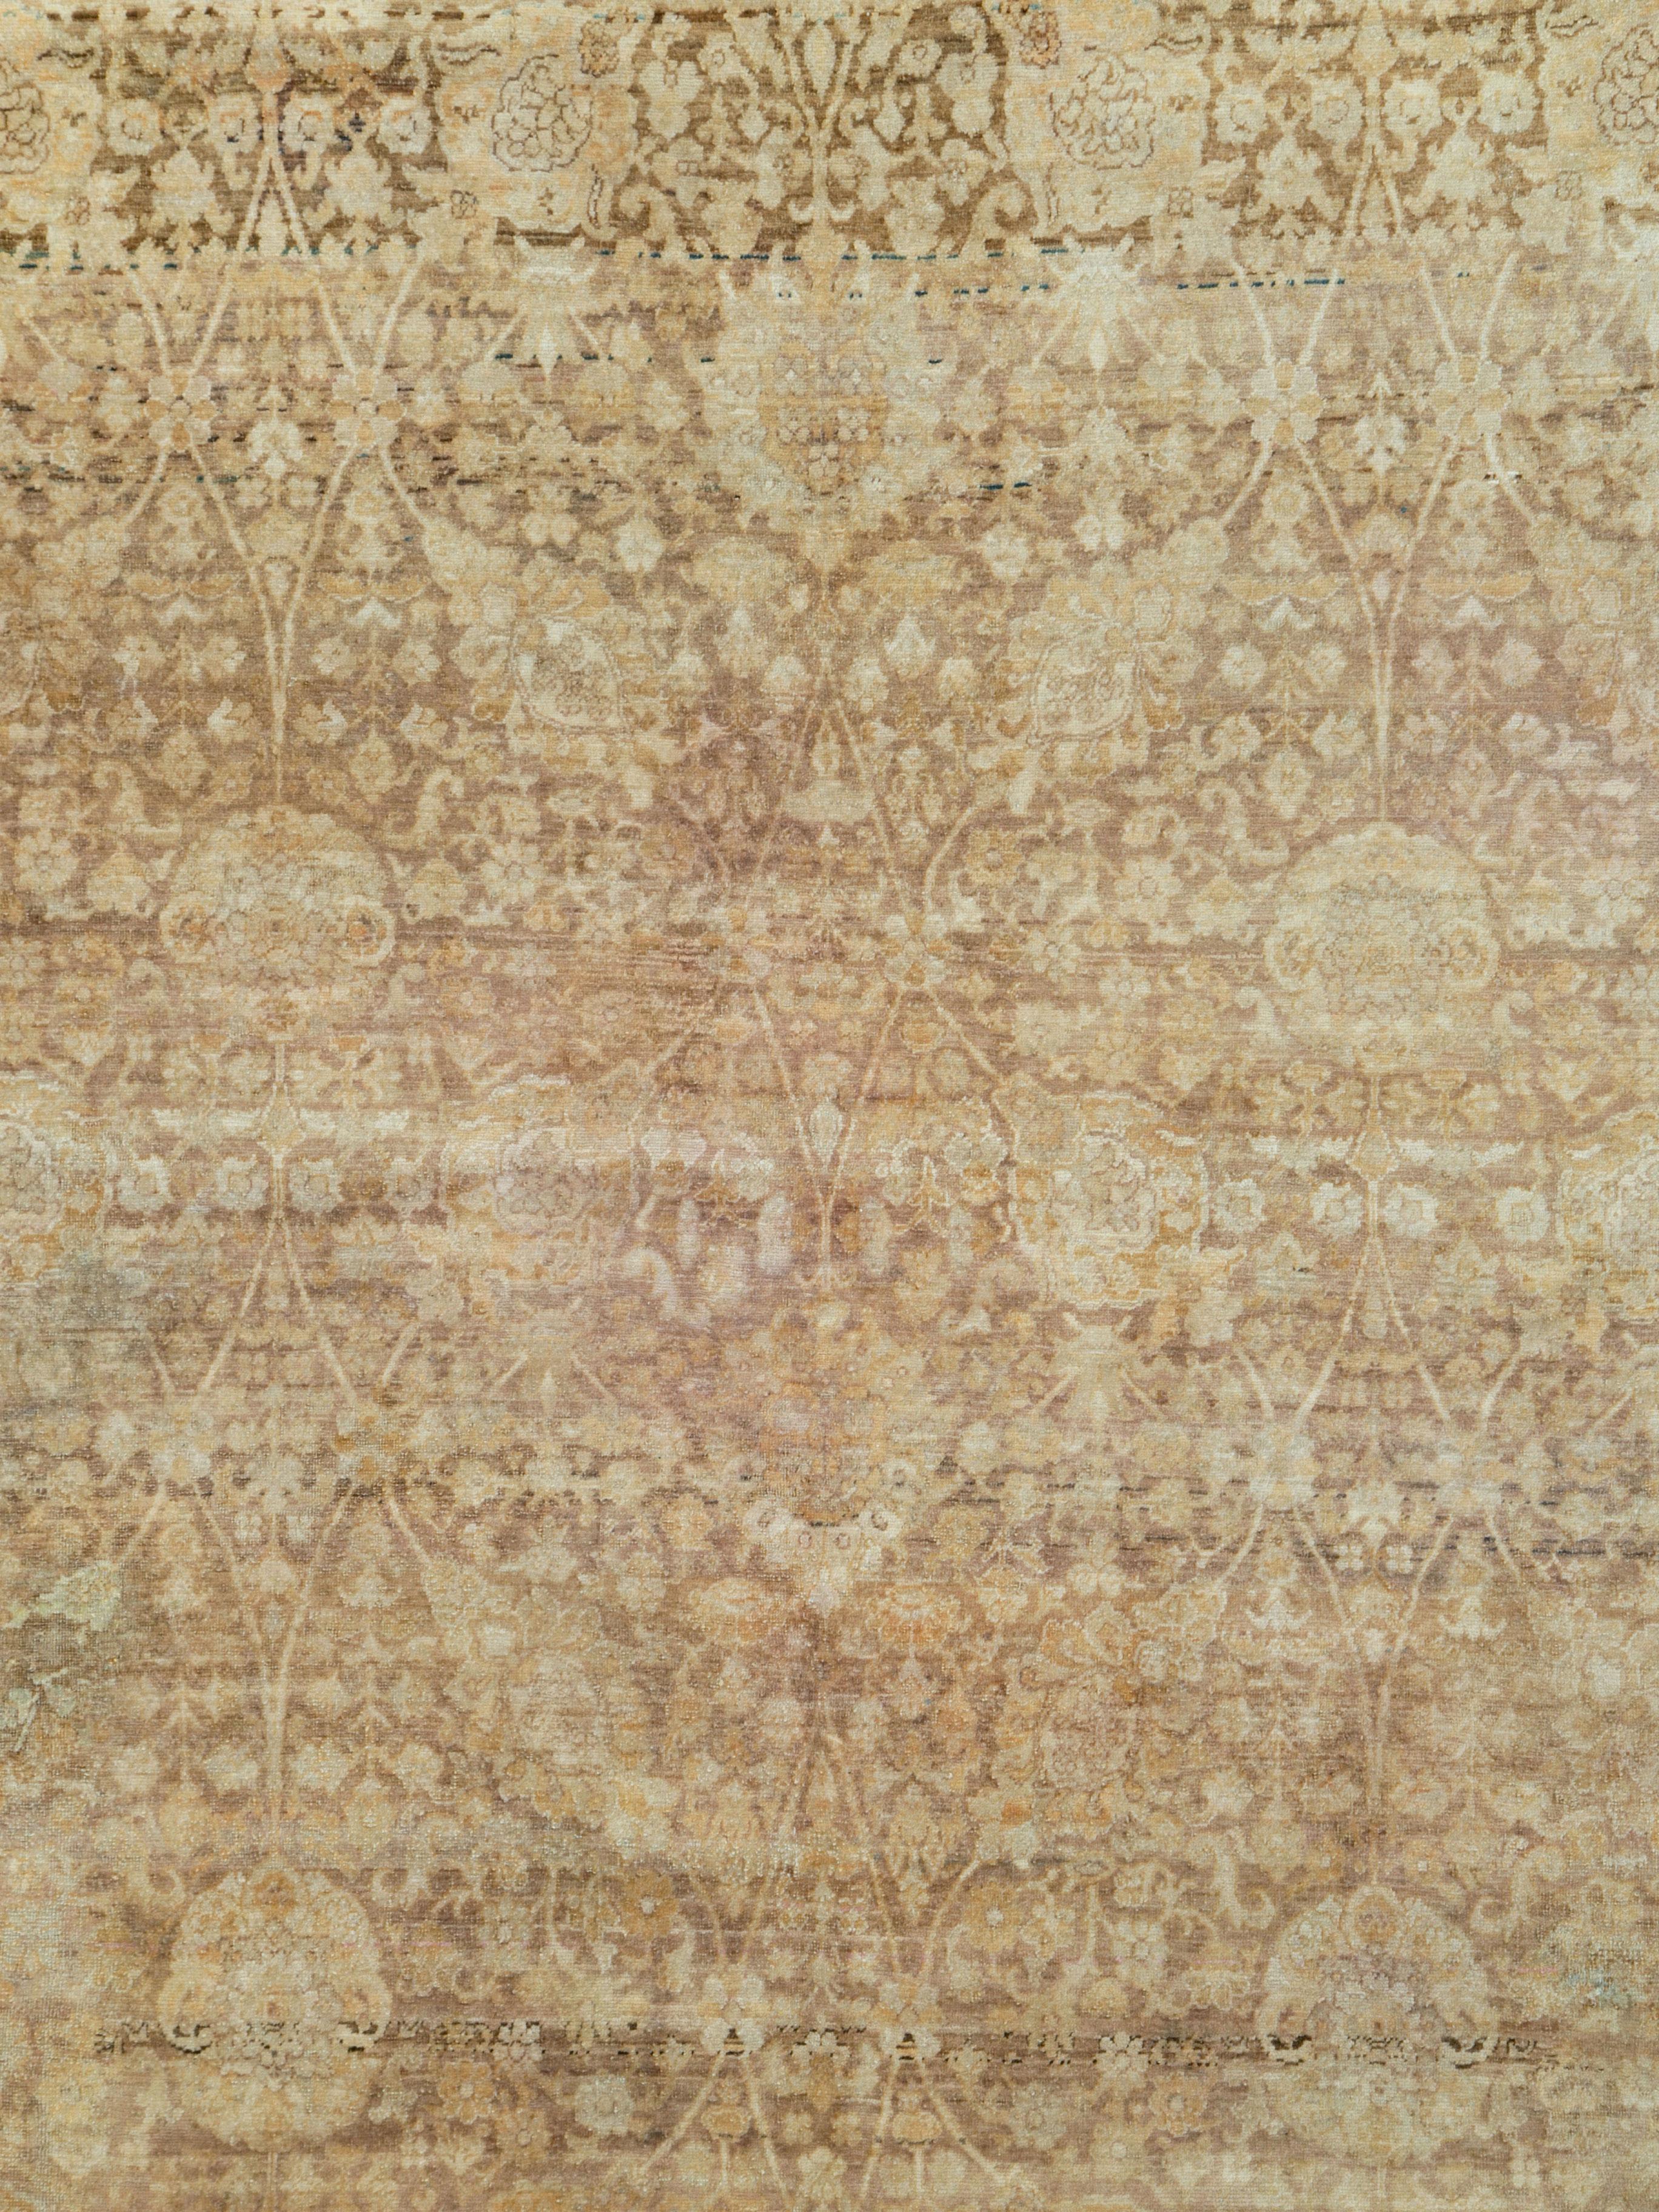 Ein antiker türkischer Sivas-Teppich aus dem frühen 20. Jahrhundert.

Maße: 9' 11